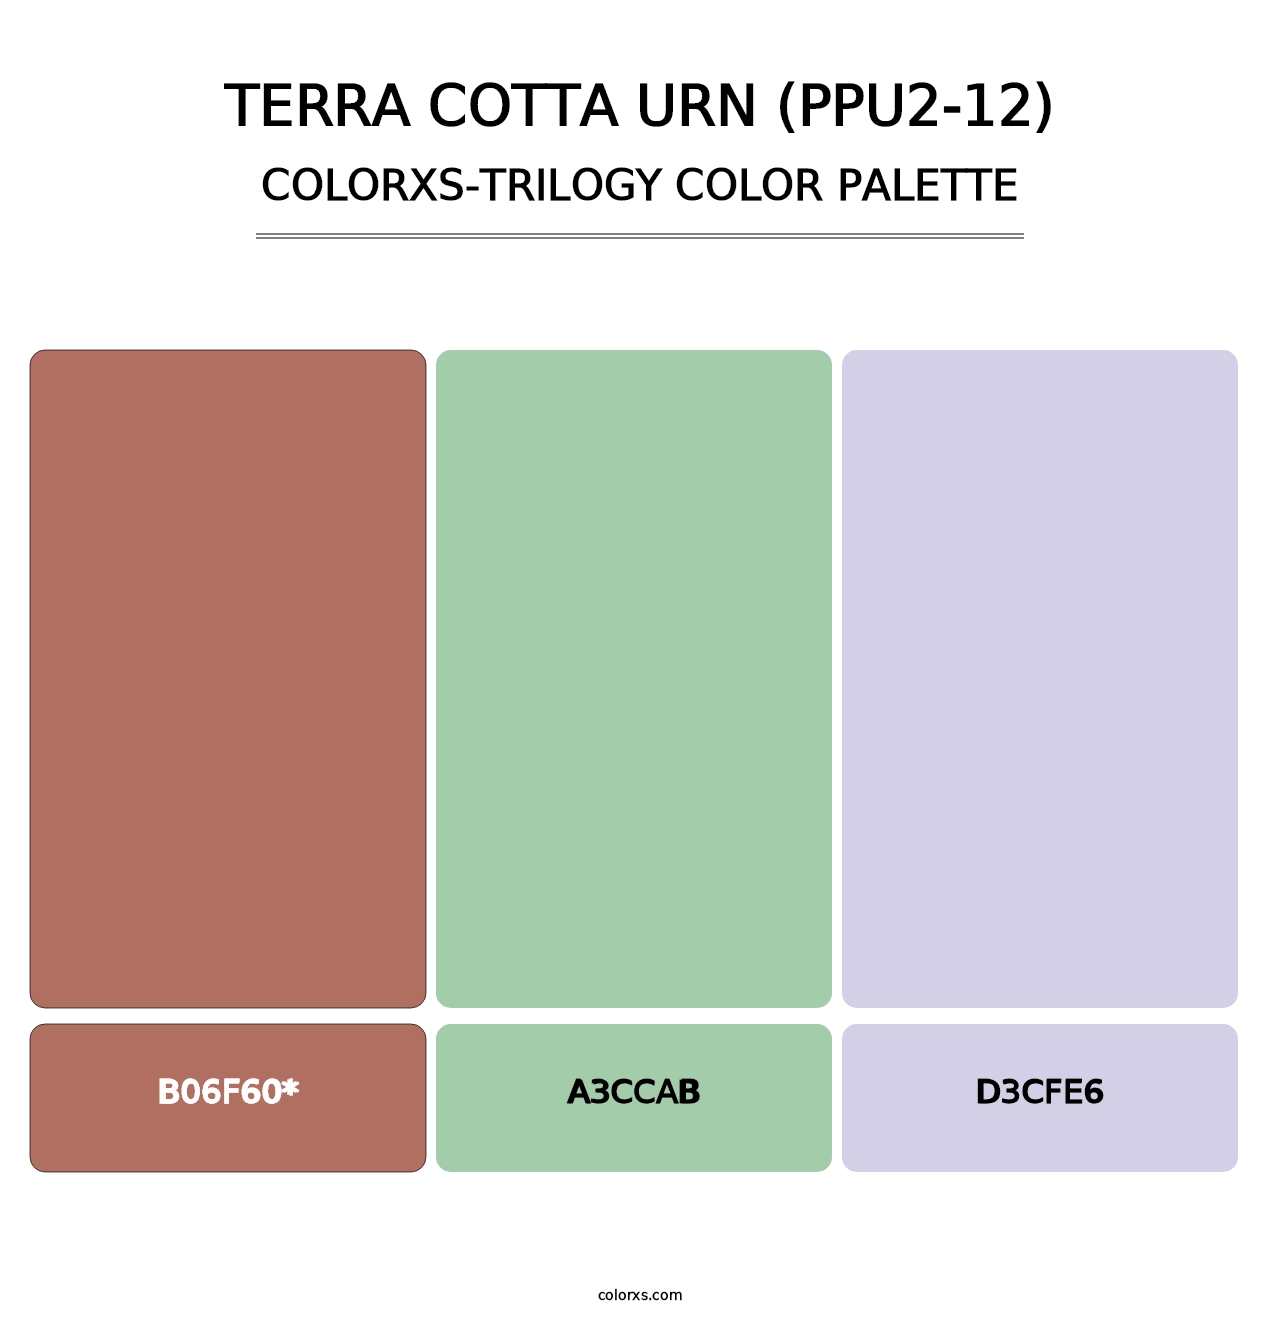 Terra Cotta Urn (PPU2-12) - Colorxs Trilogy Palette